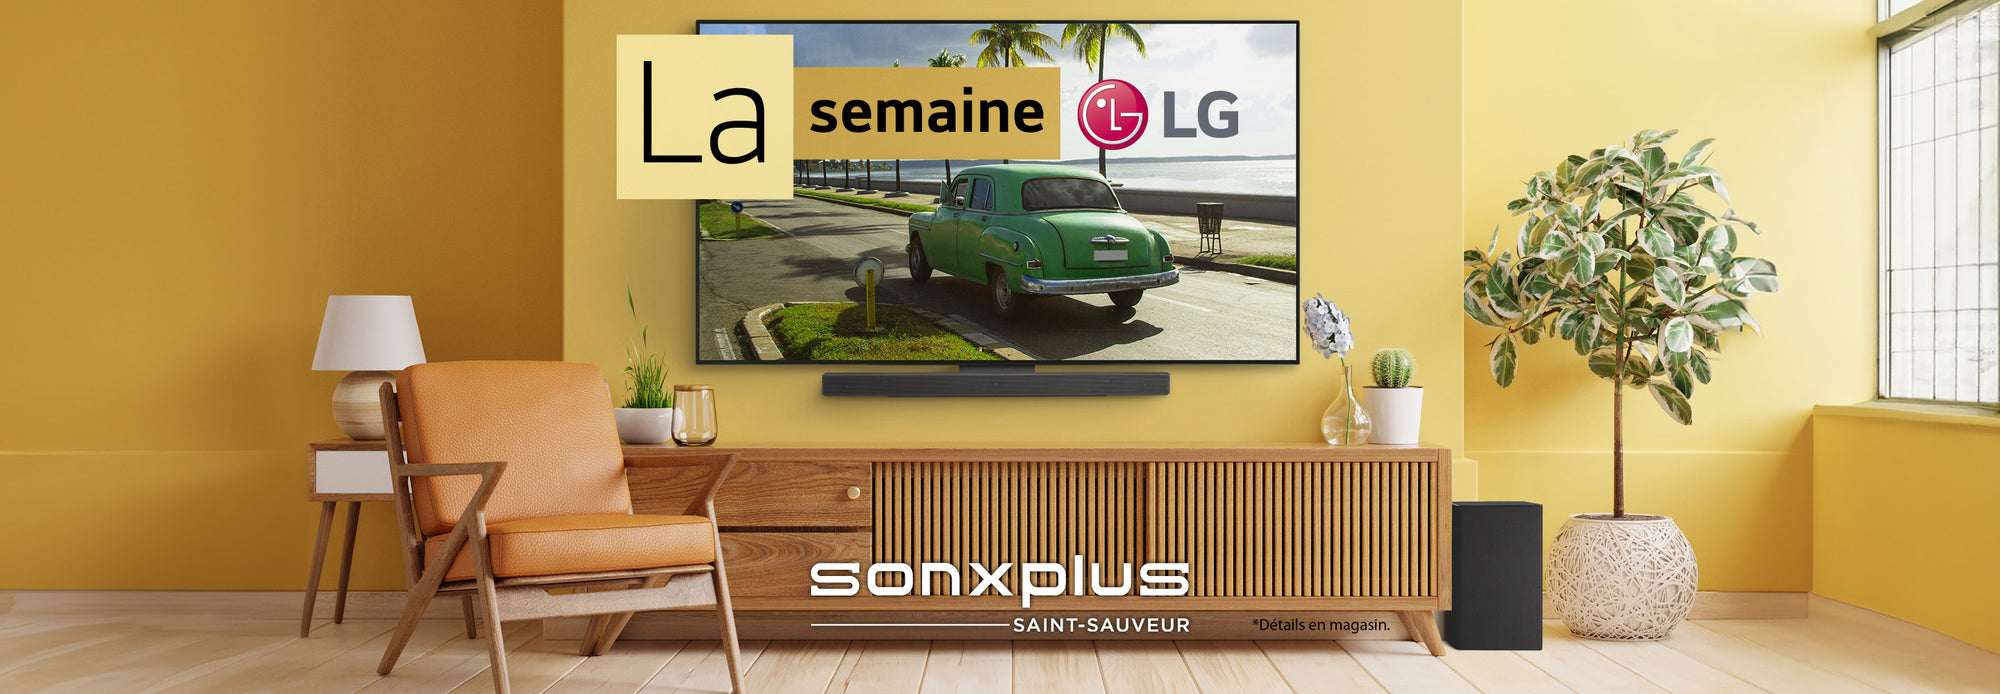 La semaine LG | SONXPLUS St-Sauveur